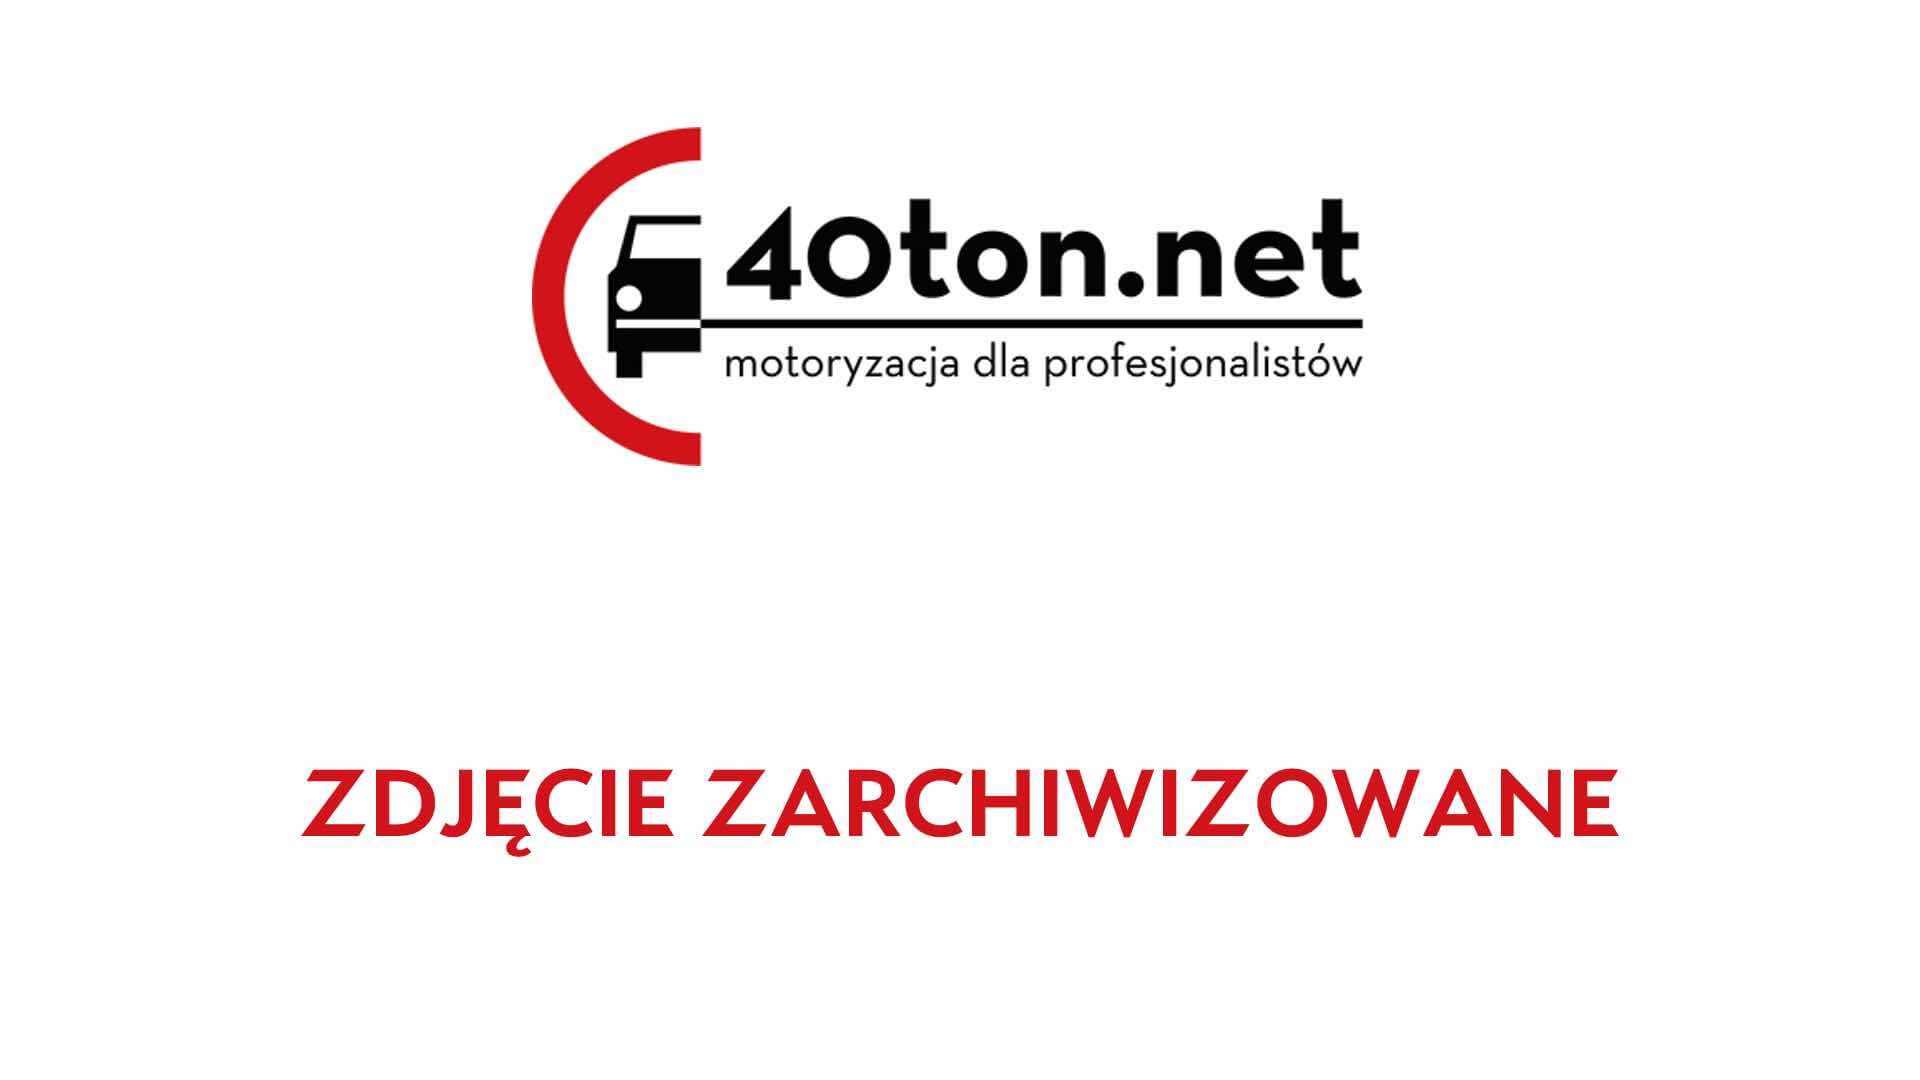 polskie_ciezarowki_40ton_truckspotters_1307